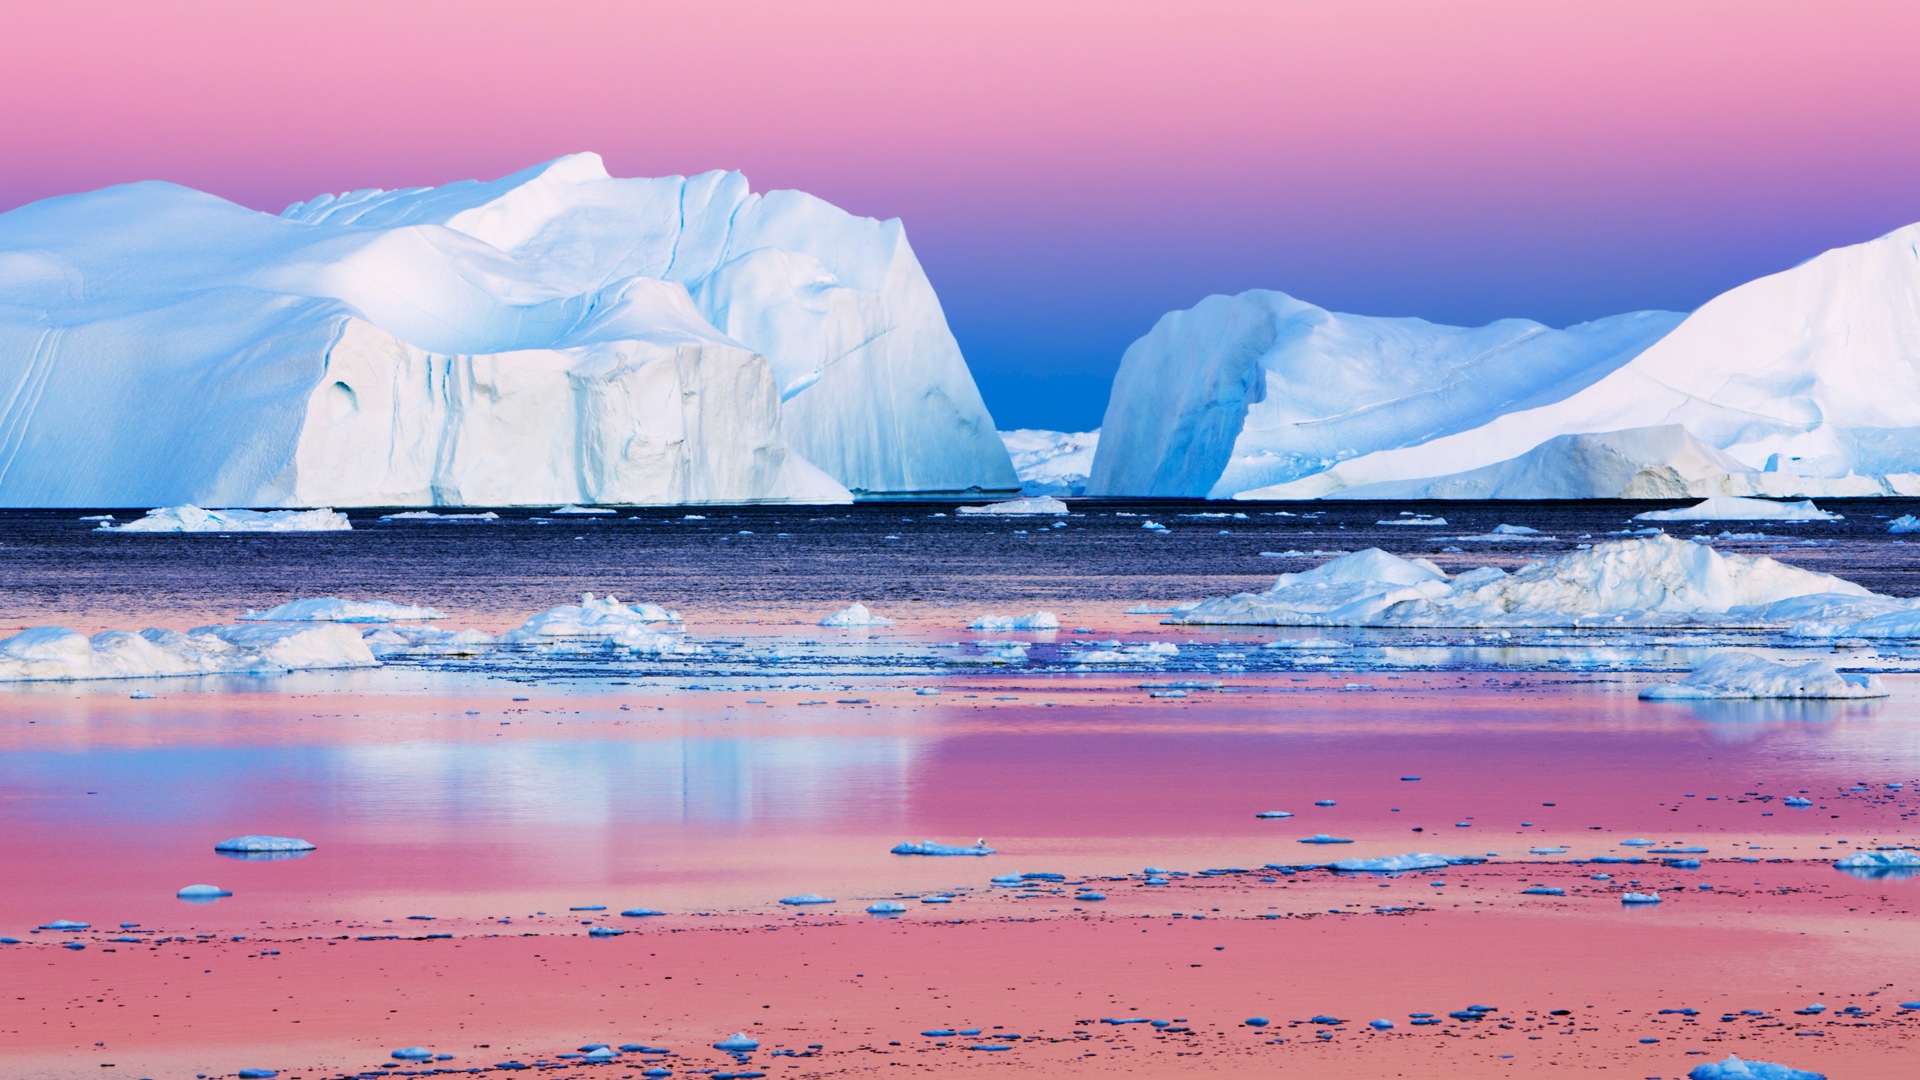 Windows 8: Fondos del Ártico, el paisaje ecológico, ártico animales #7 - 1920x1080